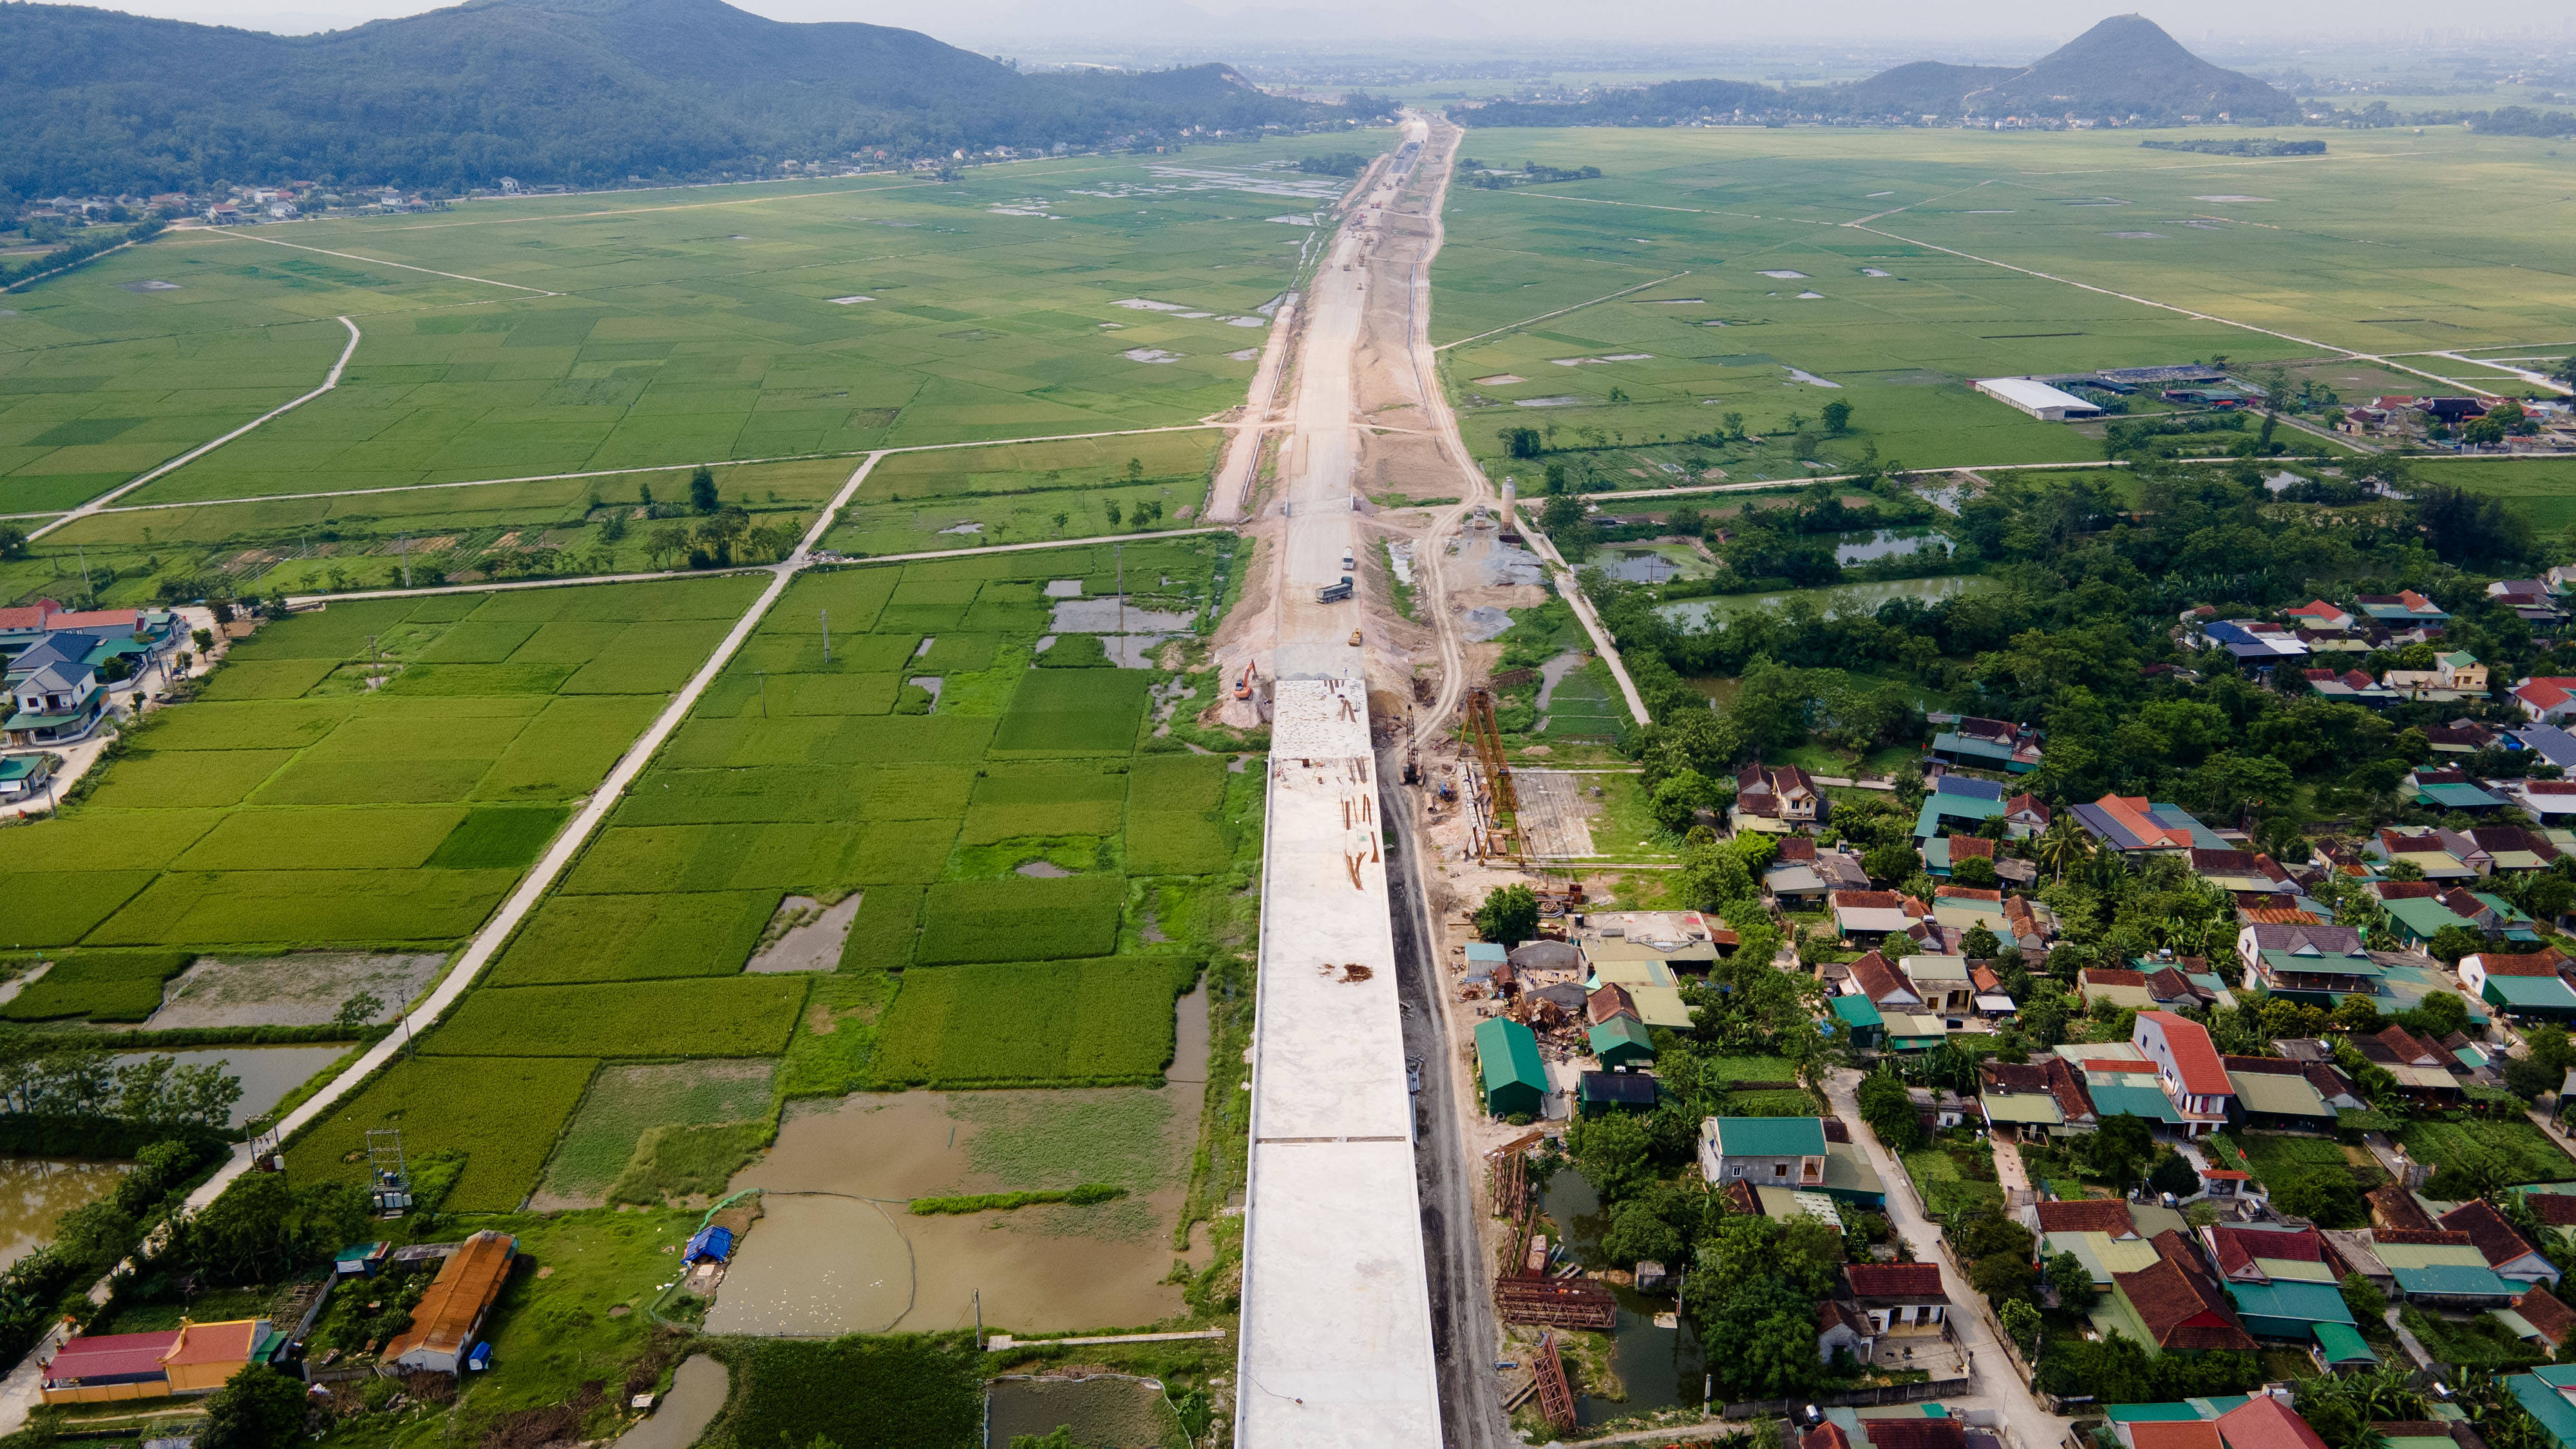 Phần đường nối với cầu ở phía Bắc huyện Hưng Nguyên (Nghệ An) đang trong quá trình làm nền đường.